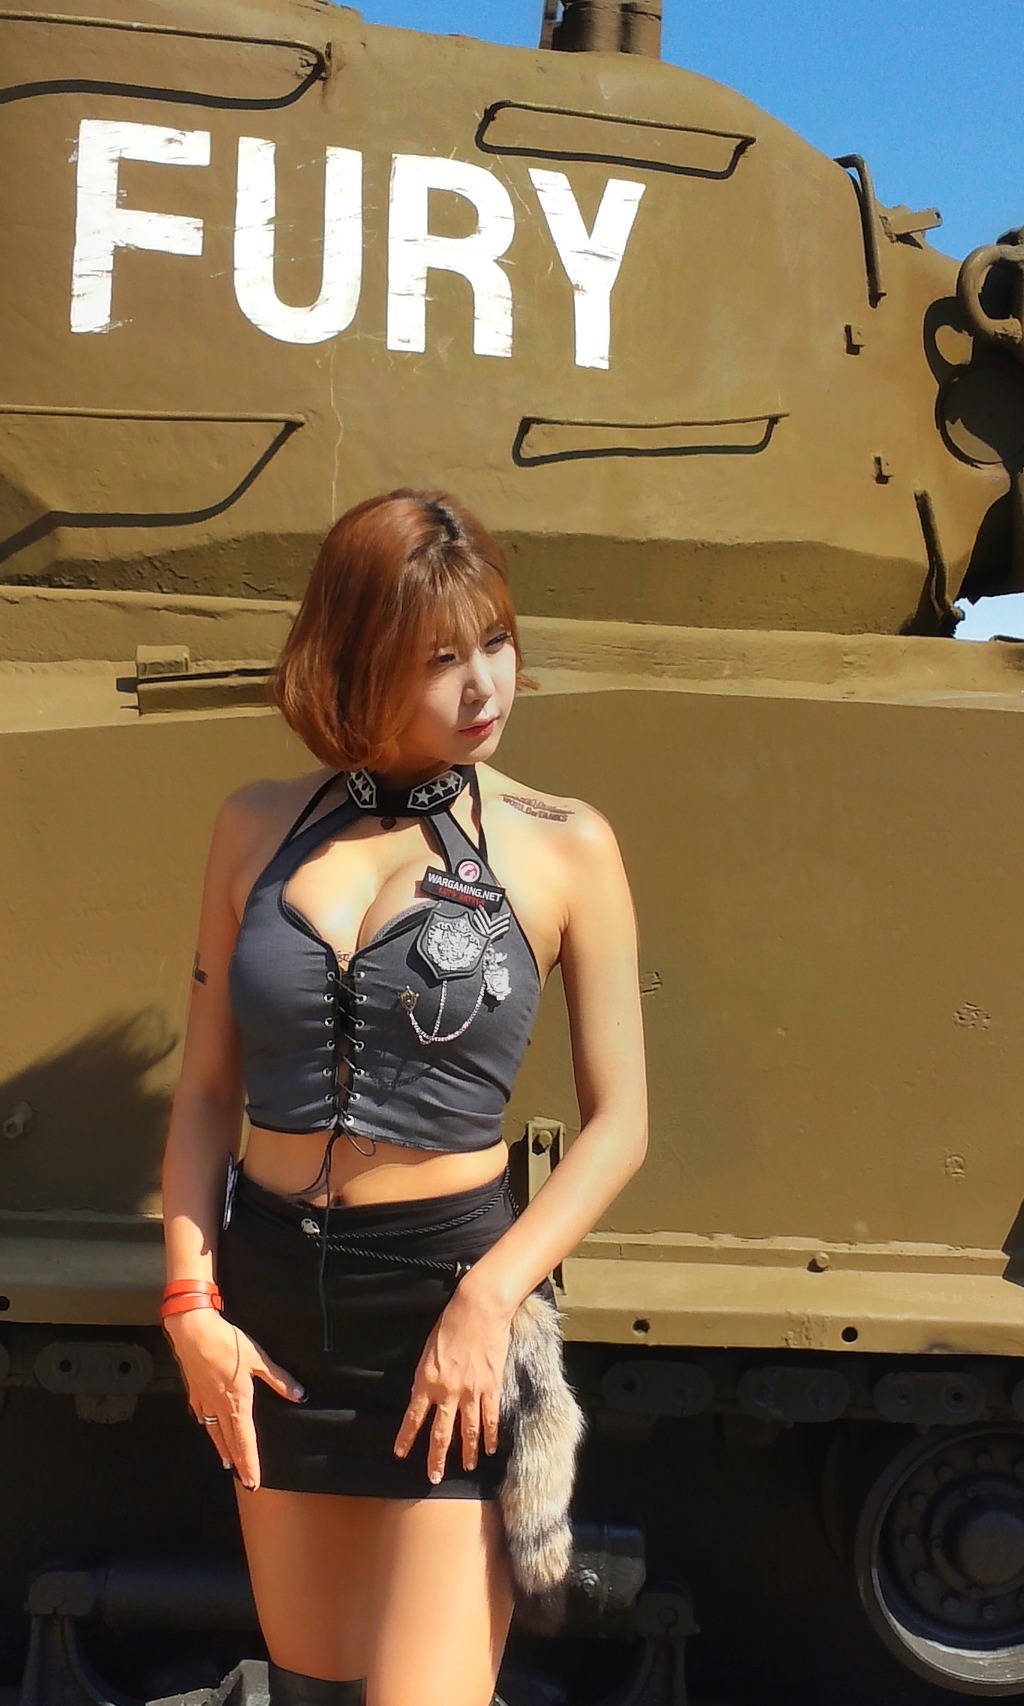 South Korea's top showgirl Xu Yunmei Busan tank world 1